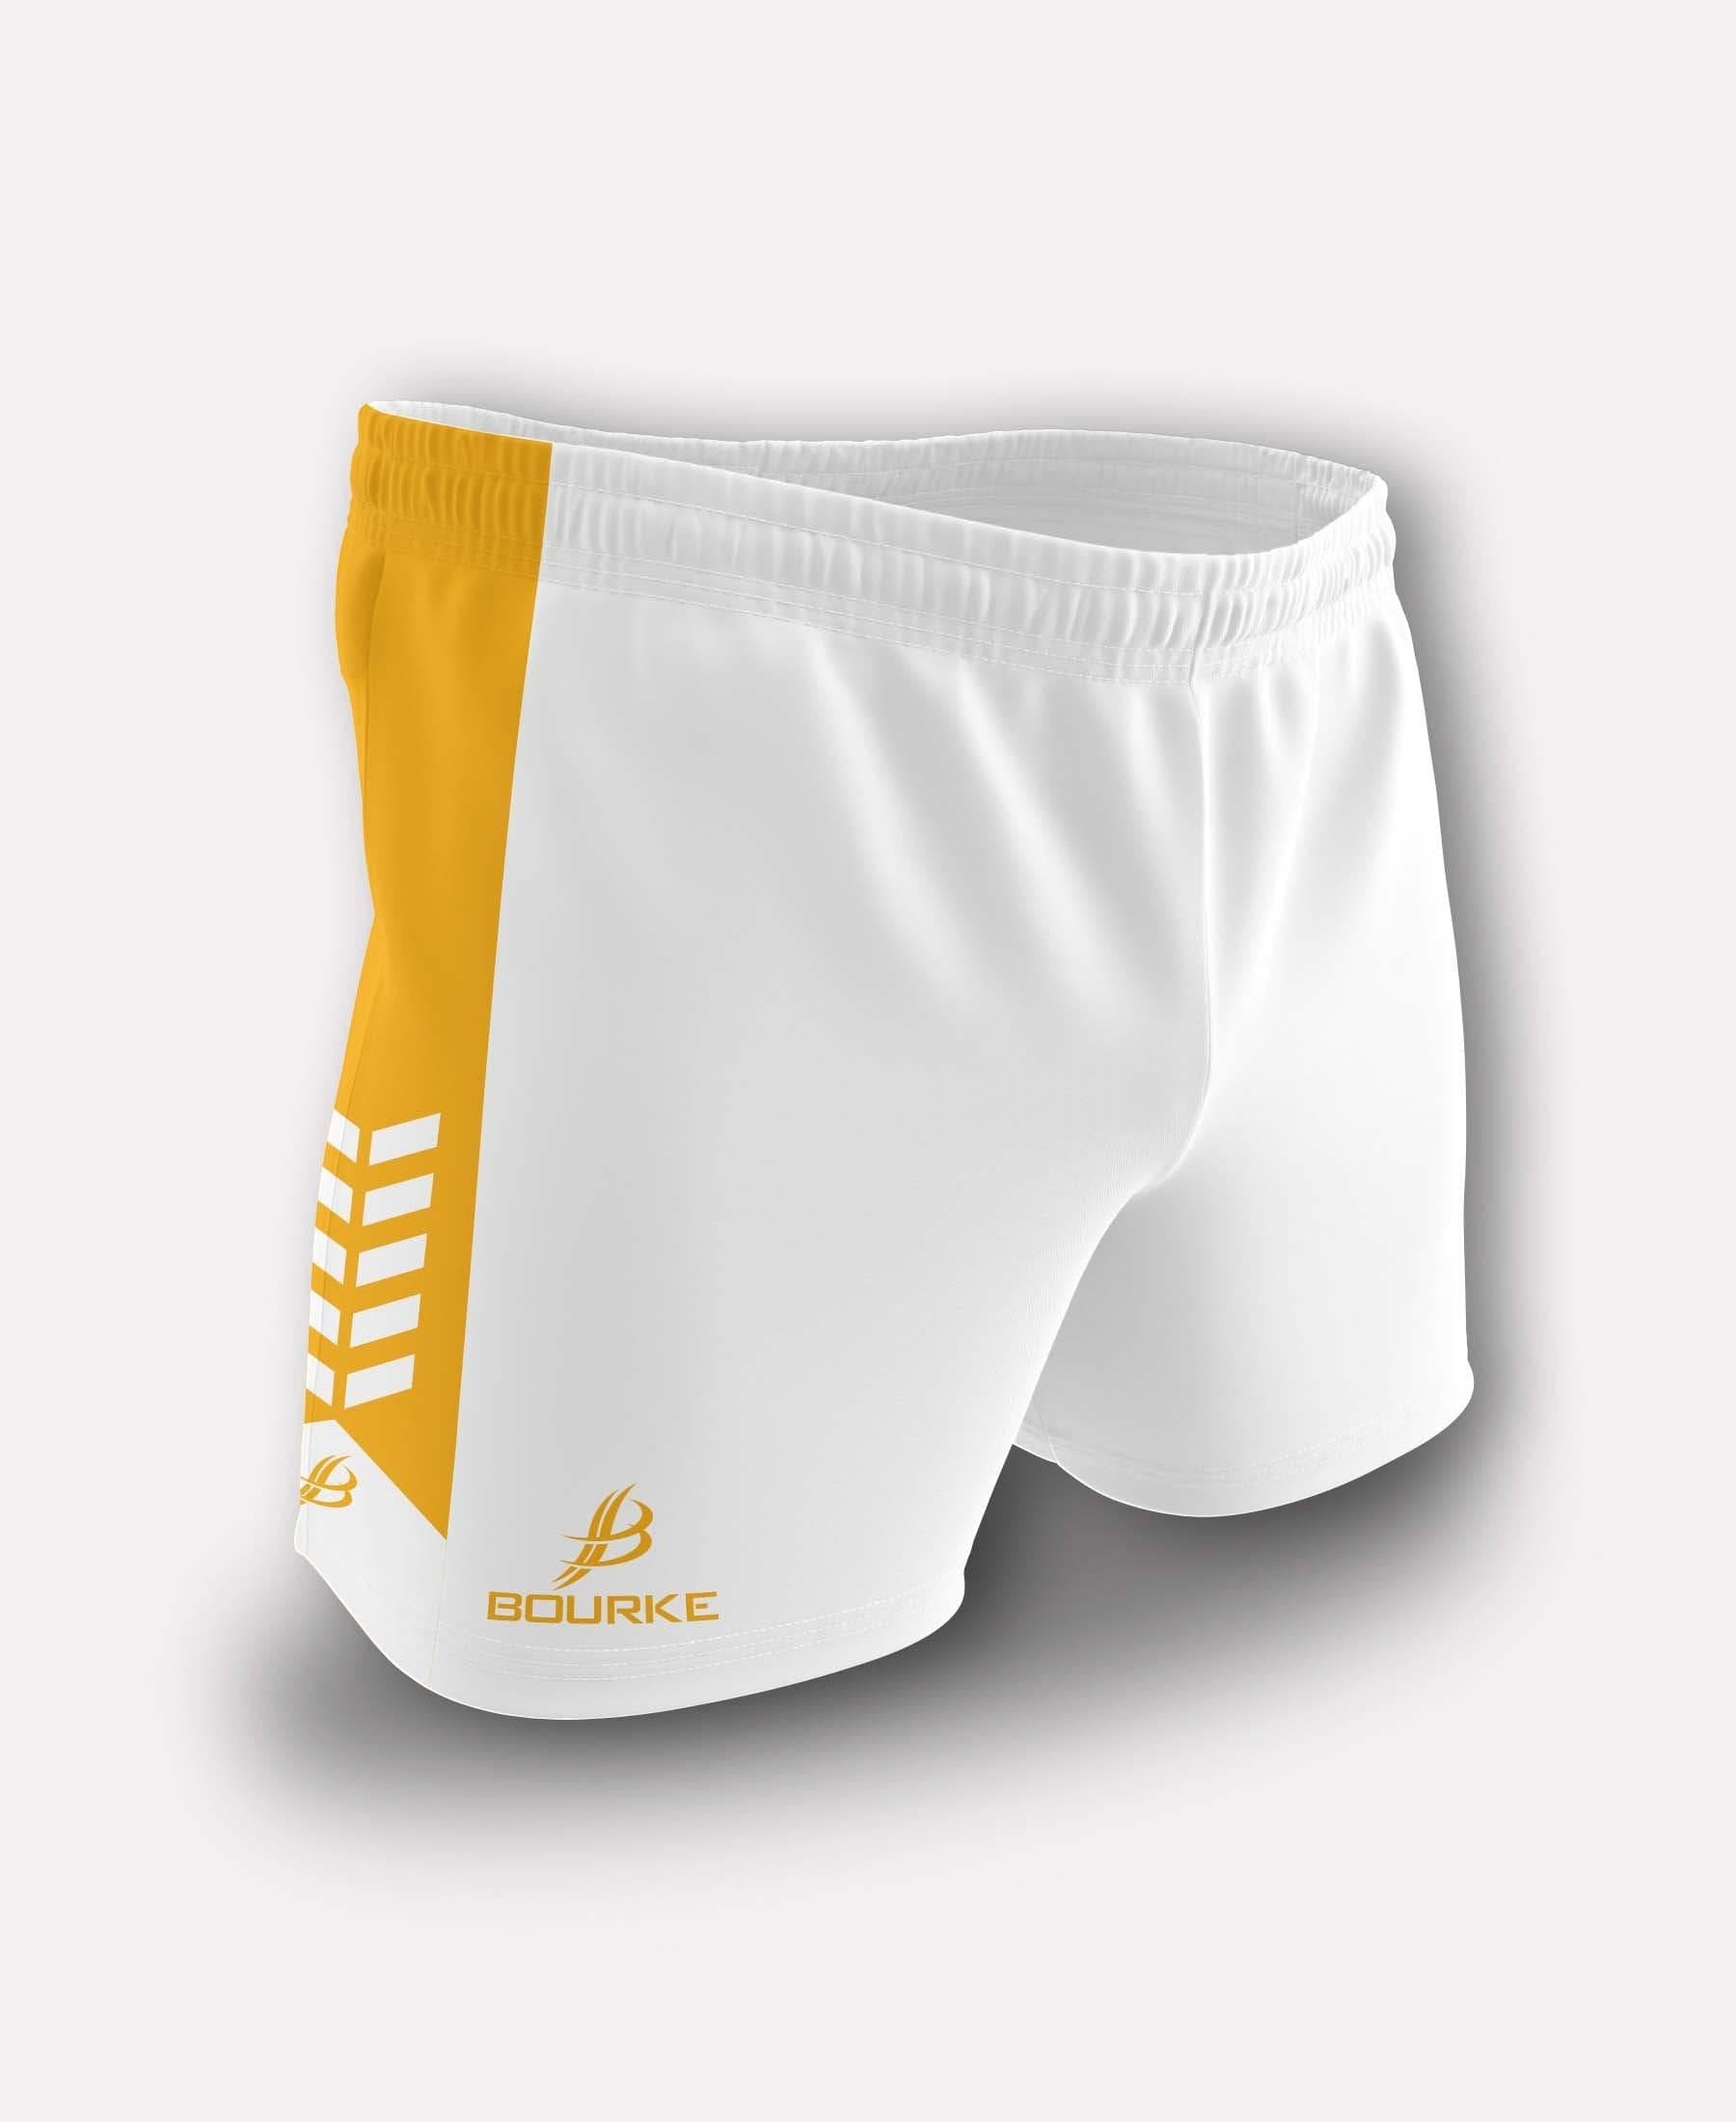 Chevron Kids Shorts (White/Amber) - Bourke Sports Limited